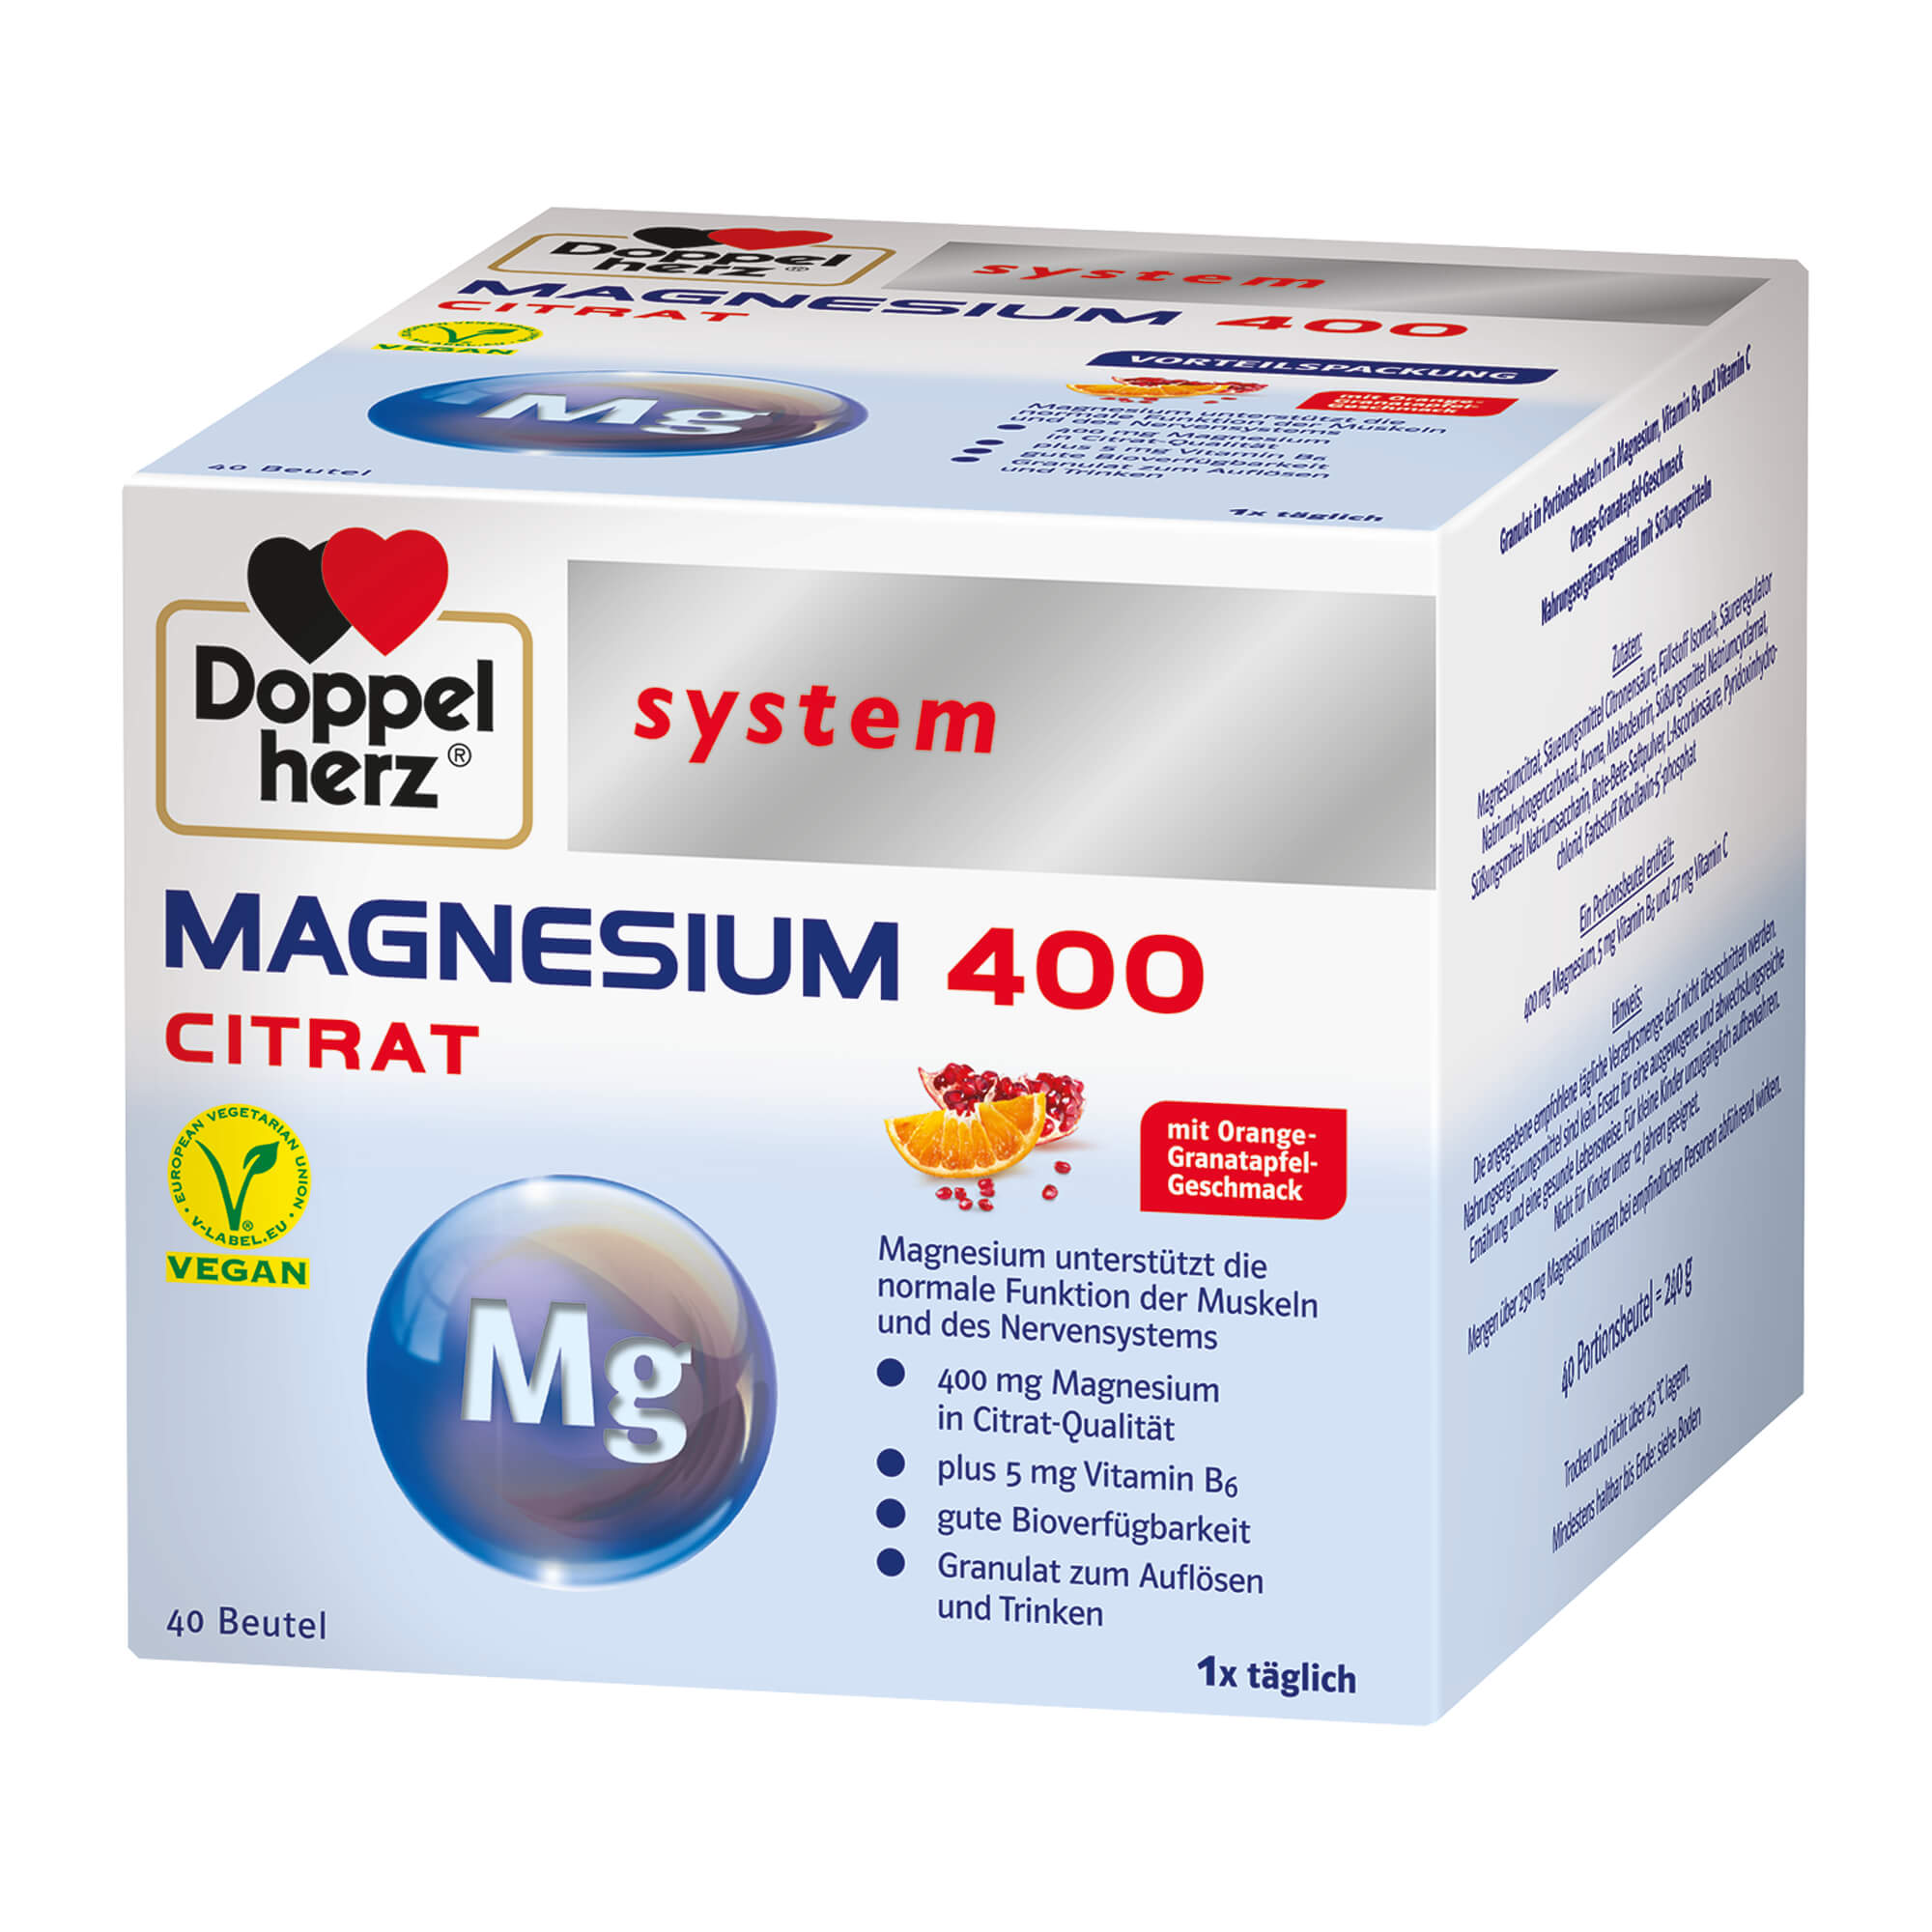 Magnesium als Beitrag für die normale Funktion der Muskeln und des Nervensystems. Nahrungsergänzungsmittel mit Orange-Granatapfel-Geschmack.